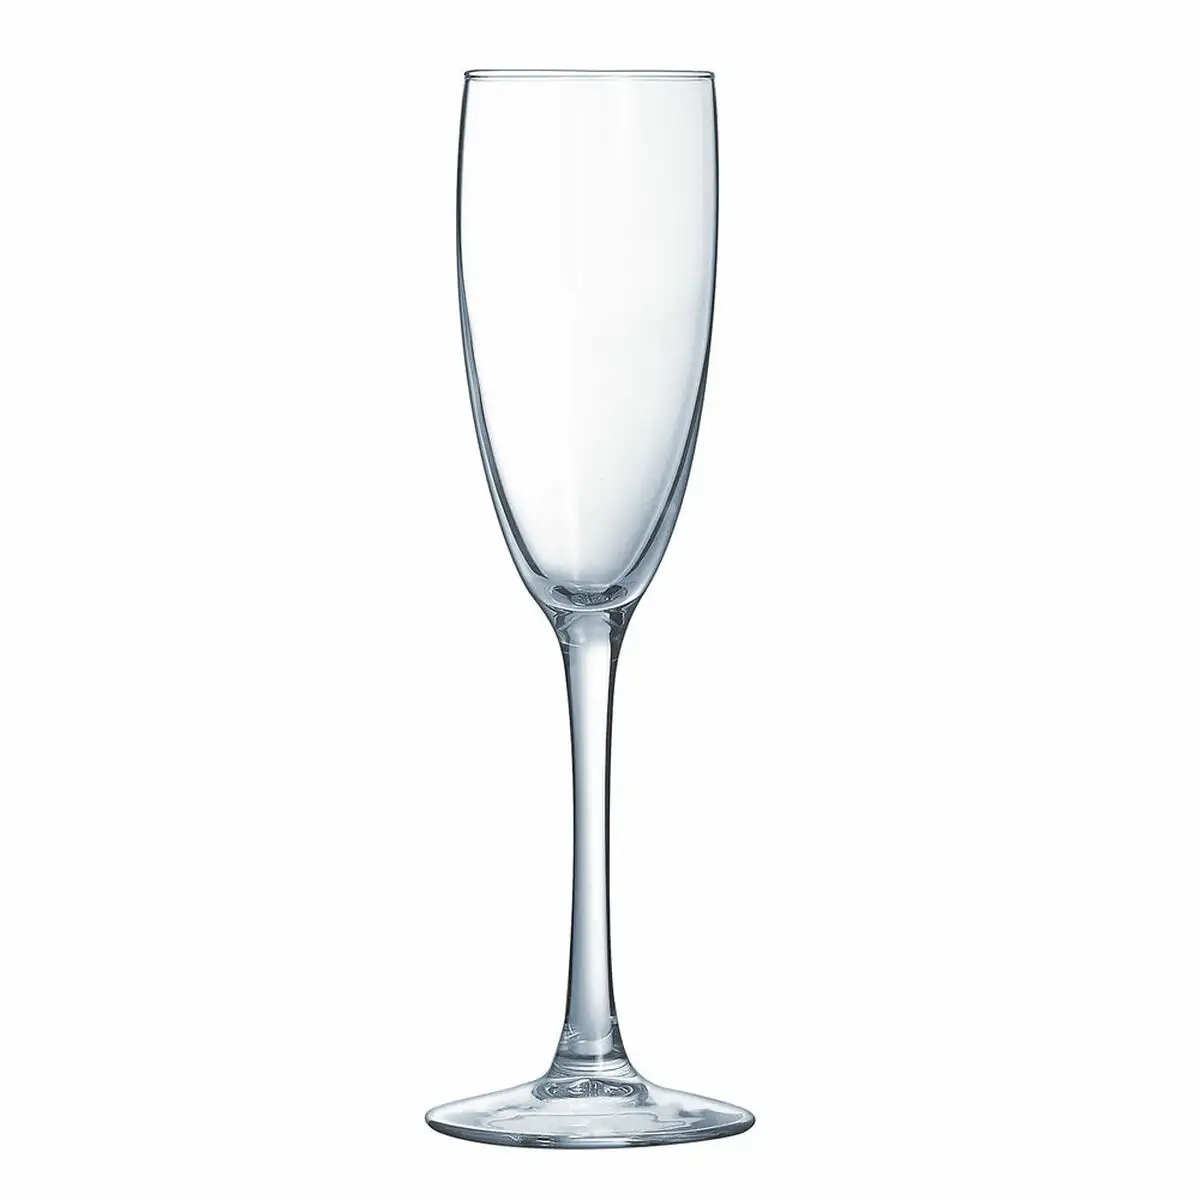 Coupe de champagne arcoroc vina transparent verre 6 unites 19 cl _3590. DIAYTAR SENEGAL - Où Votre Shopping Prend Vie. Explorez notre boutique en ligne pour trouver des articles qui vous ressemblent et qui ajoutent de l'éclat à votre quotidien.